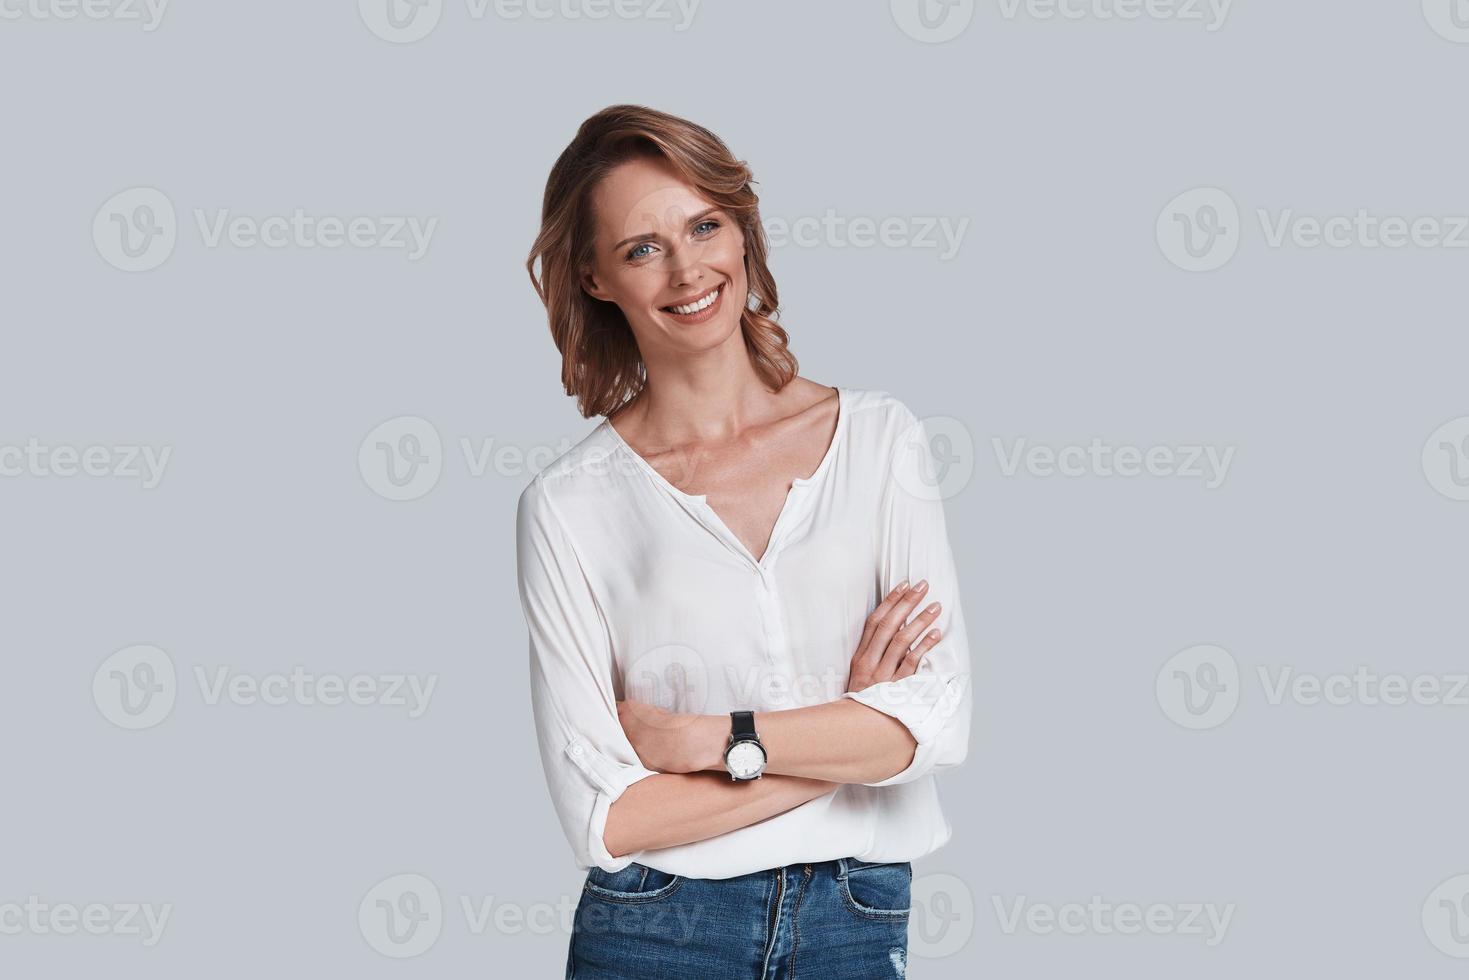 https://static.vecteezy.com/ti/photos-gratuite/p1/13496884-naturellement-belle-seduisante-jeune-femme-en-tenue-decontractee-regardant-la-camera-et-souriant-en-se-tenant-debout-sur-fond-gris-photo.jpg